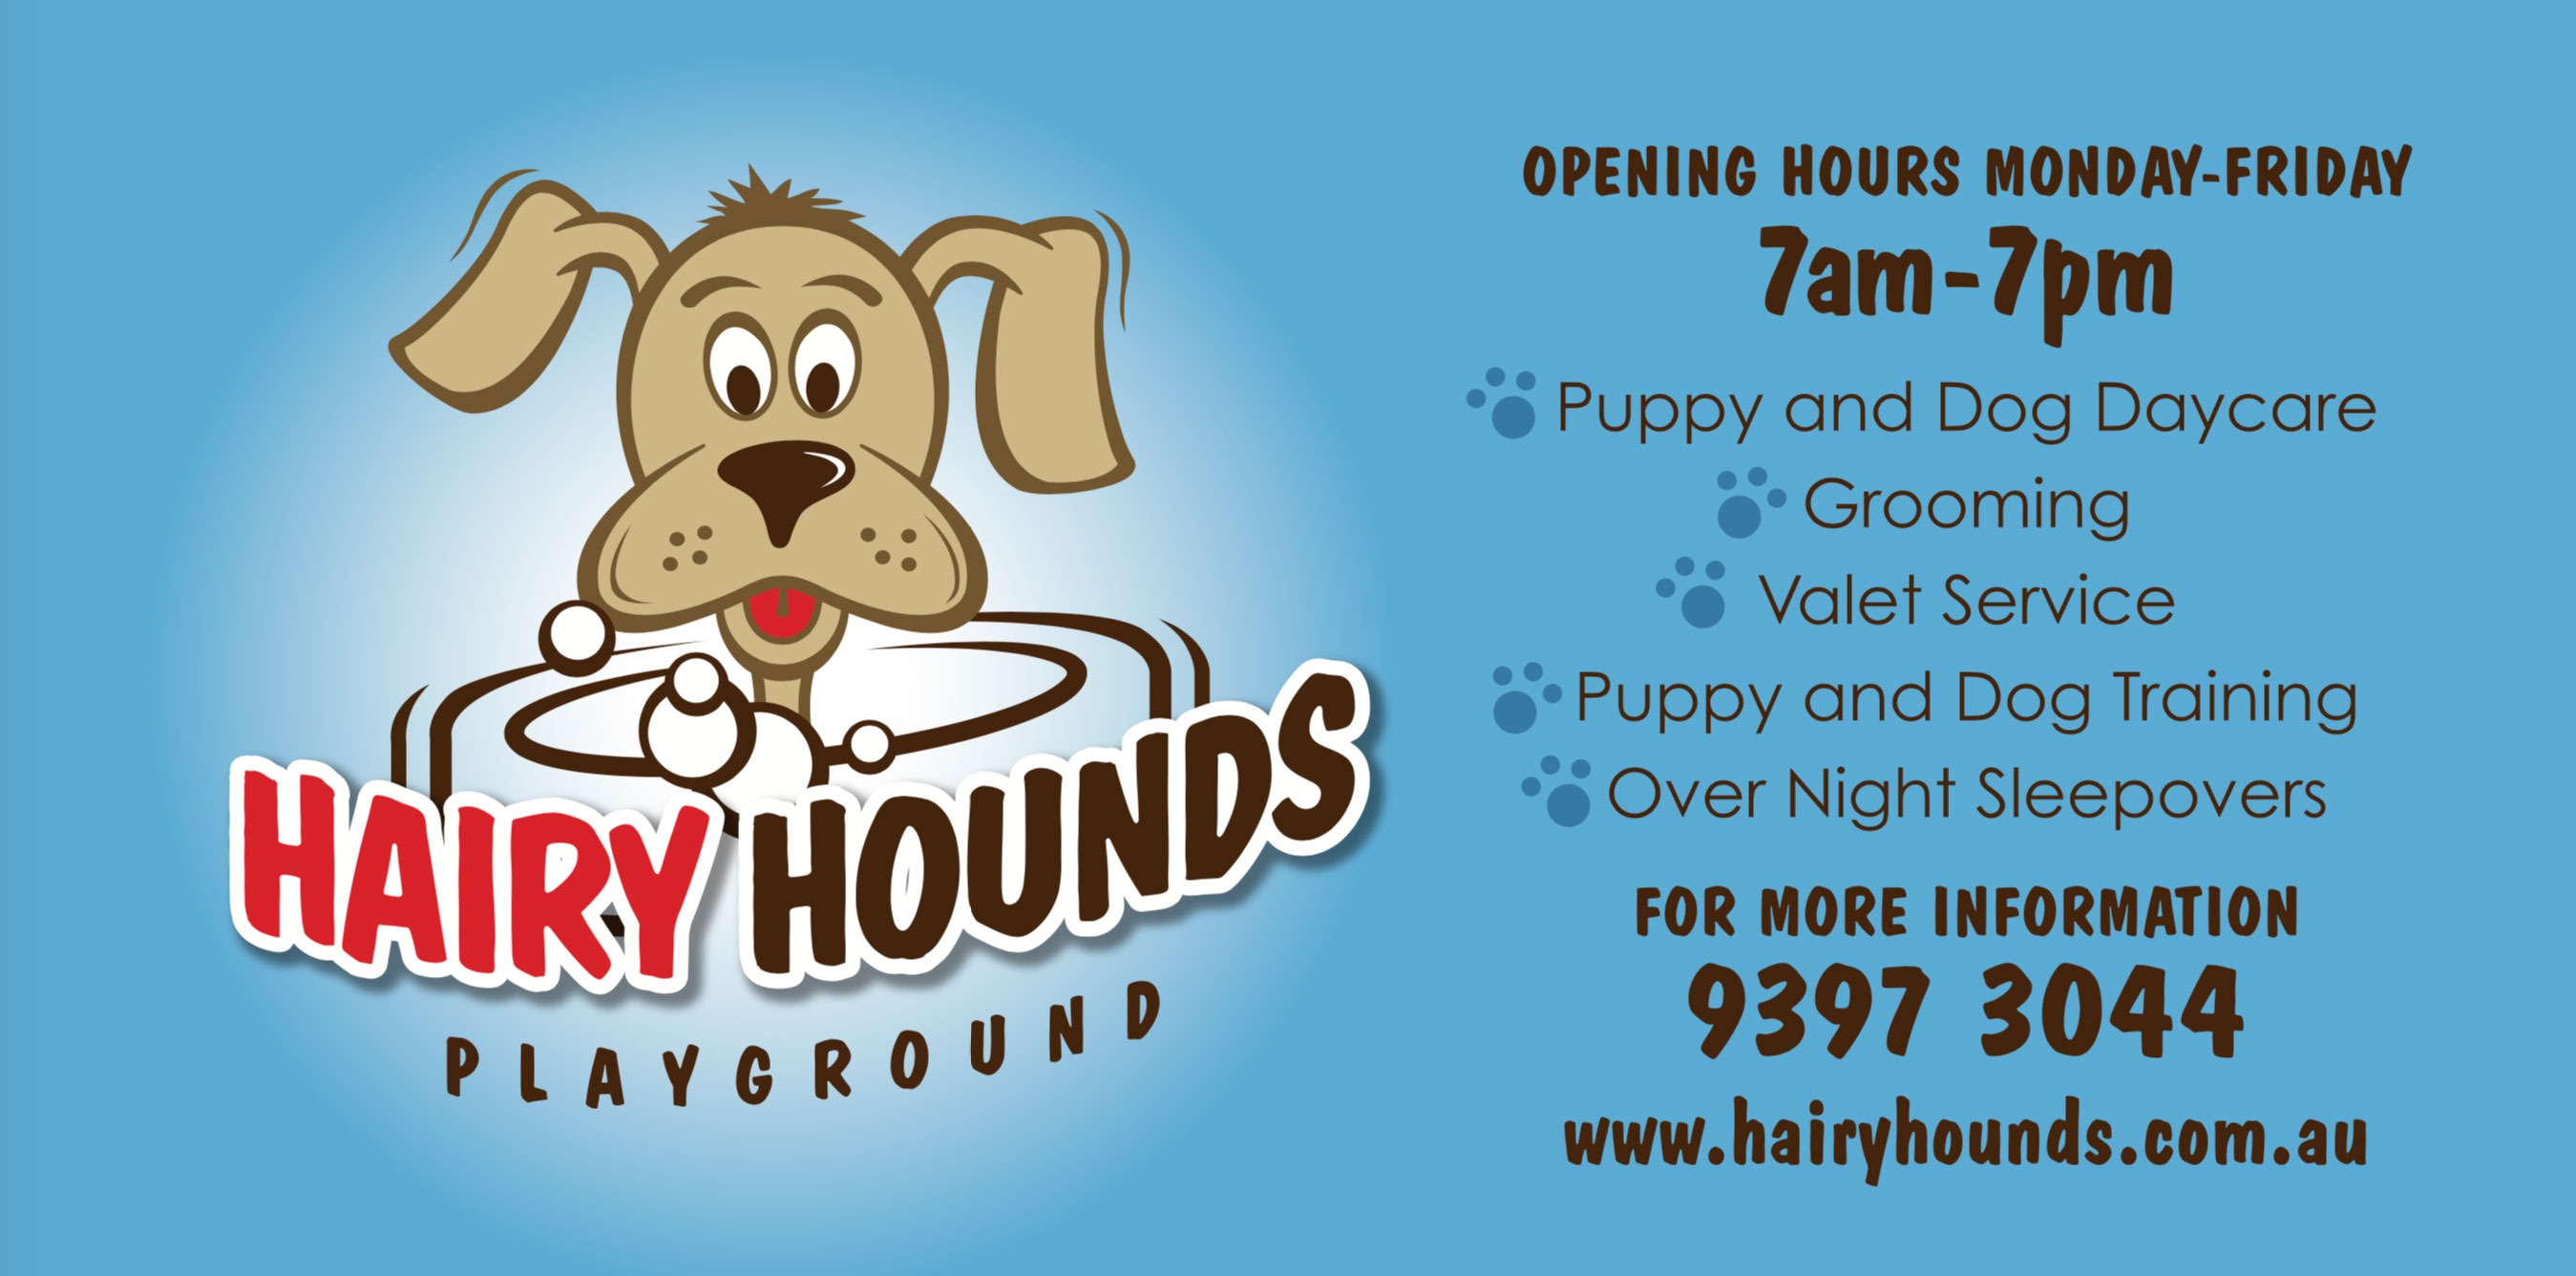 hairyhoundsplayground services large